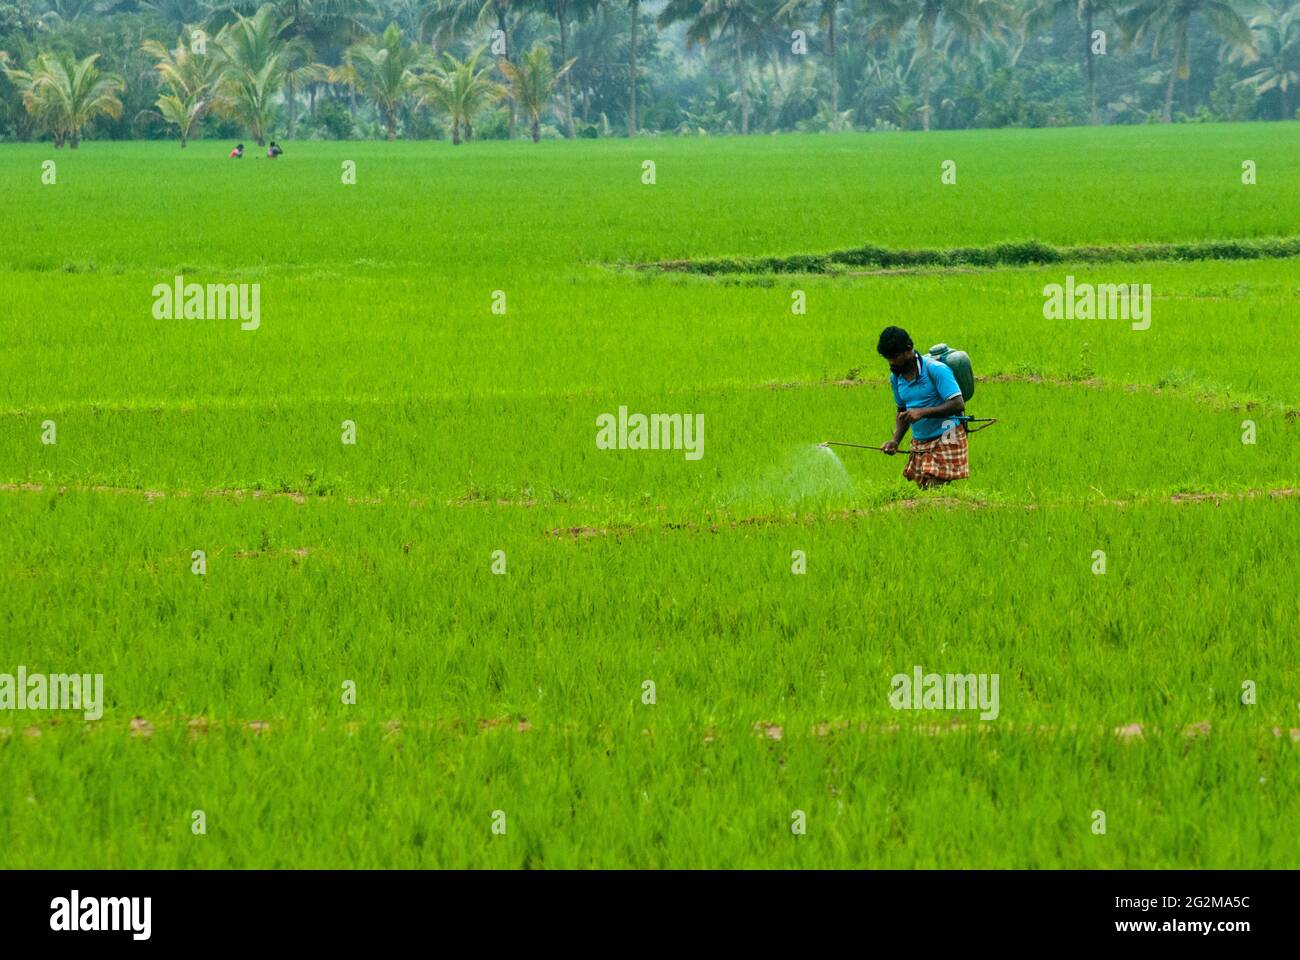 un homme vaporise un produit chimique liquide sur le champ de paddy agricole pour tuer les insectes Banque D'Images